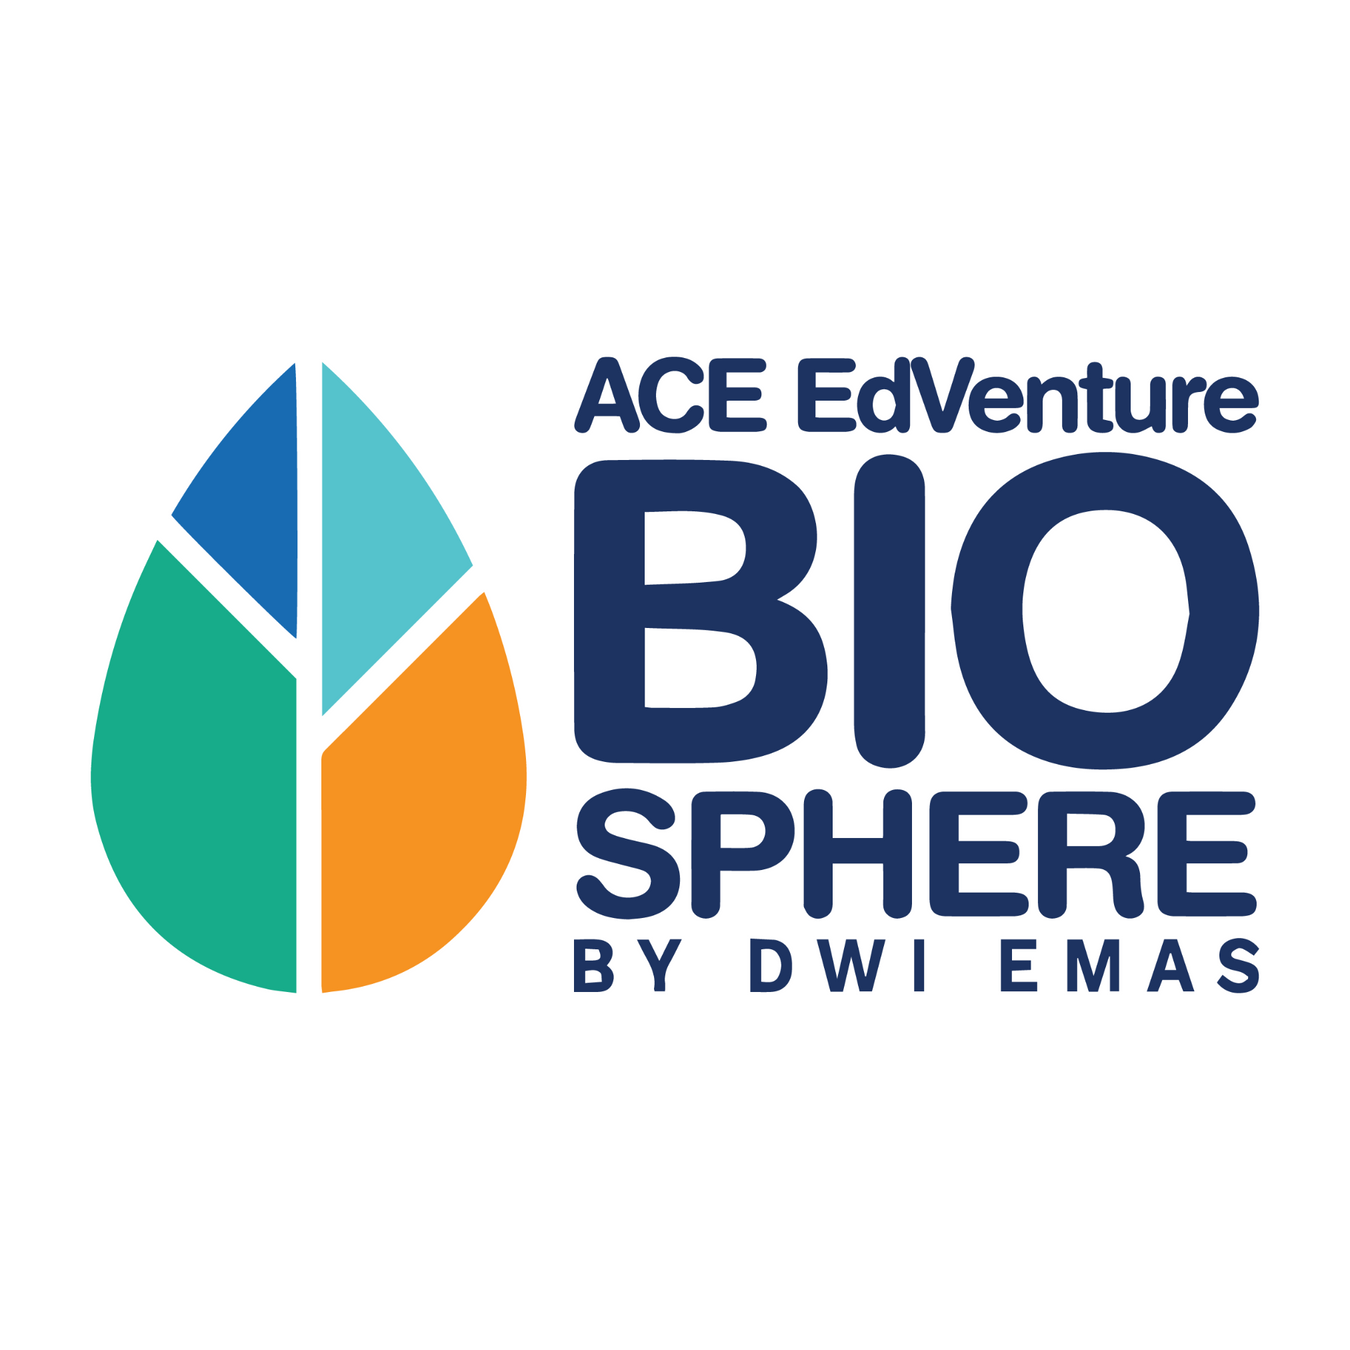 ACE EdVenture Biosphere